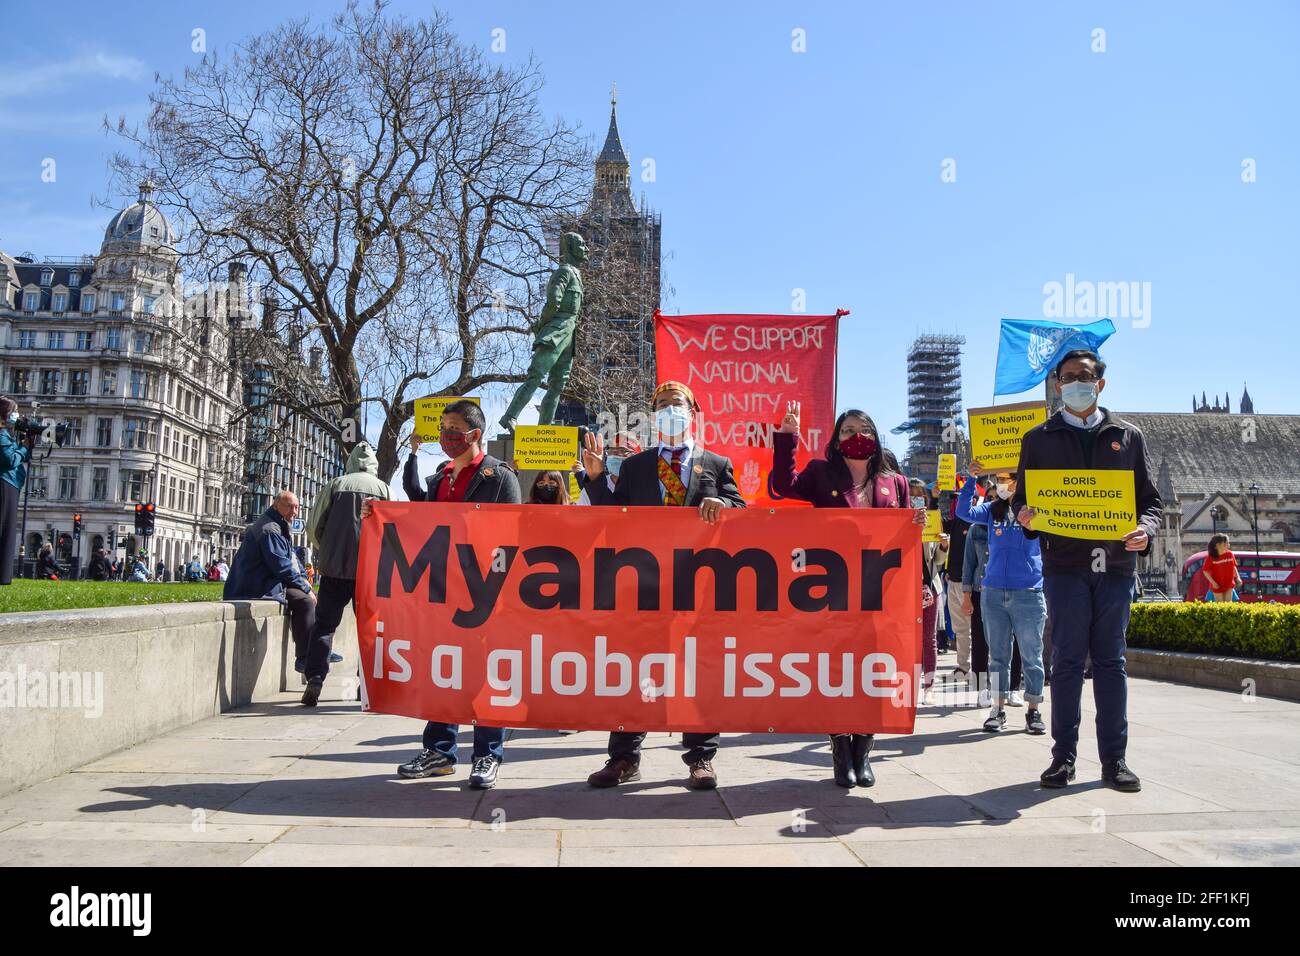 Londres, Royaume-Uni. 24 avril 2021. Des manifestants se sont rassemblés sur la place du Parlement pour protester contre le coup d'État militaire au Myanmar et pour exiger que le gouvernement britannique reconnaisse le gouvernement d'unité nationale du Myanmar. Banque D'Images